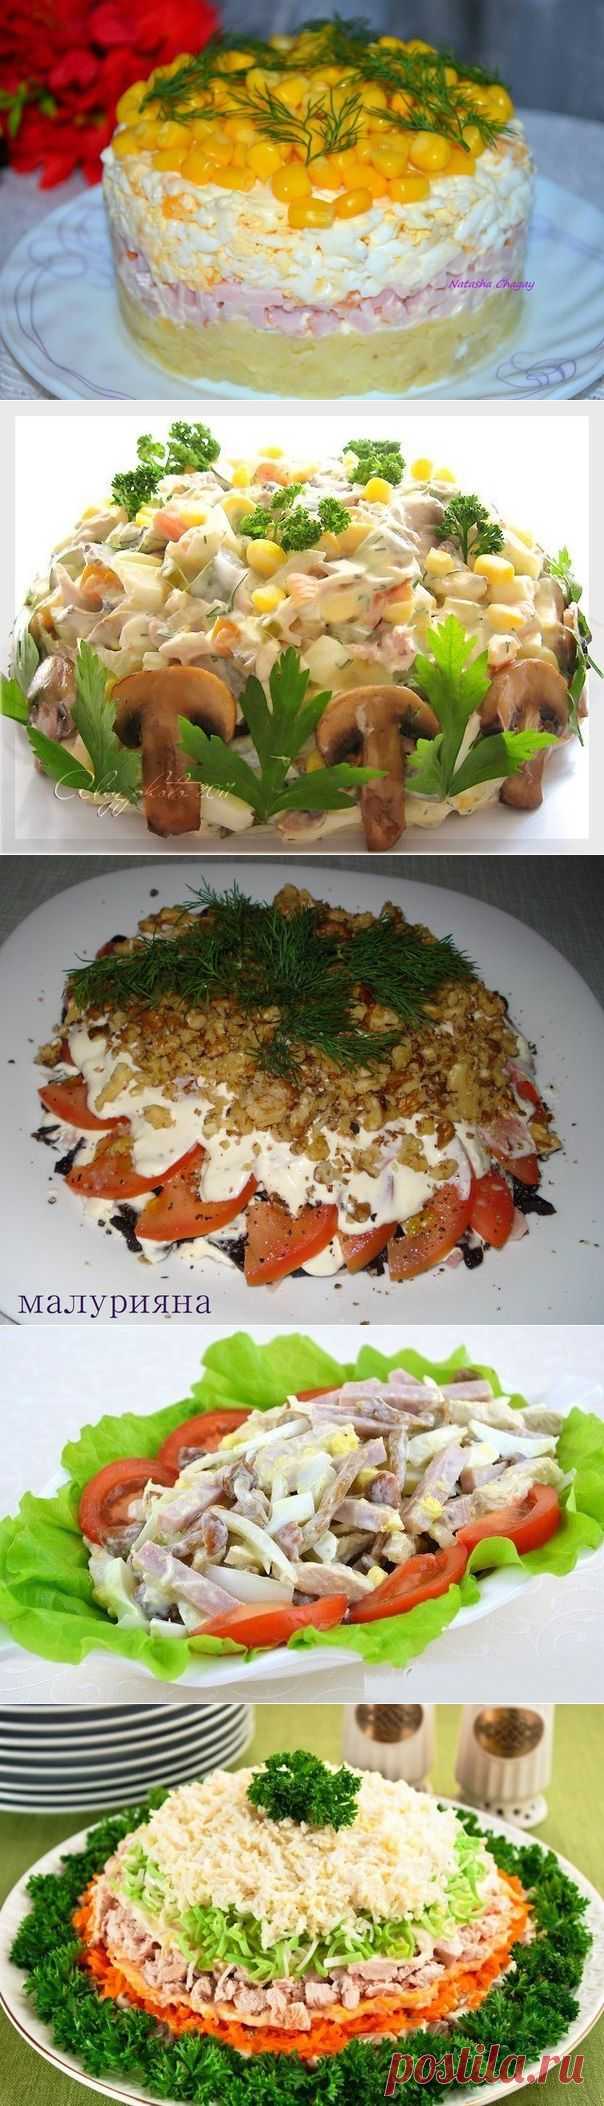 10 Рецептов потрясающих мясных салатов!) | Банк кулинарных рецептов